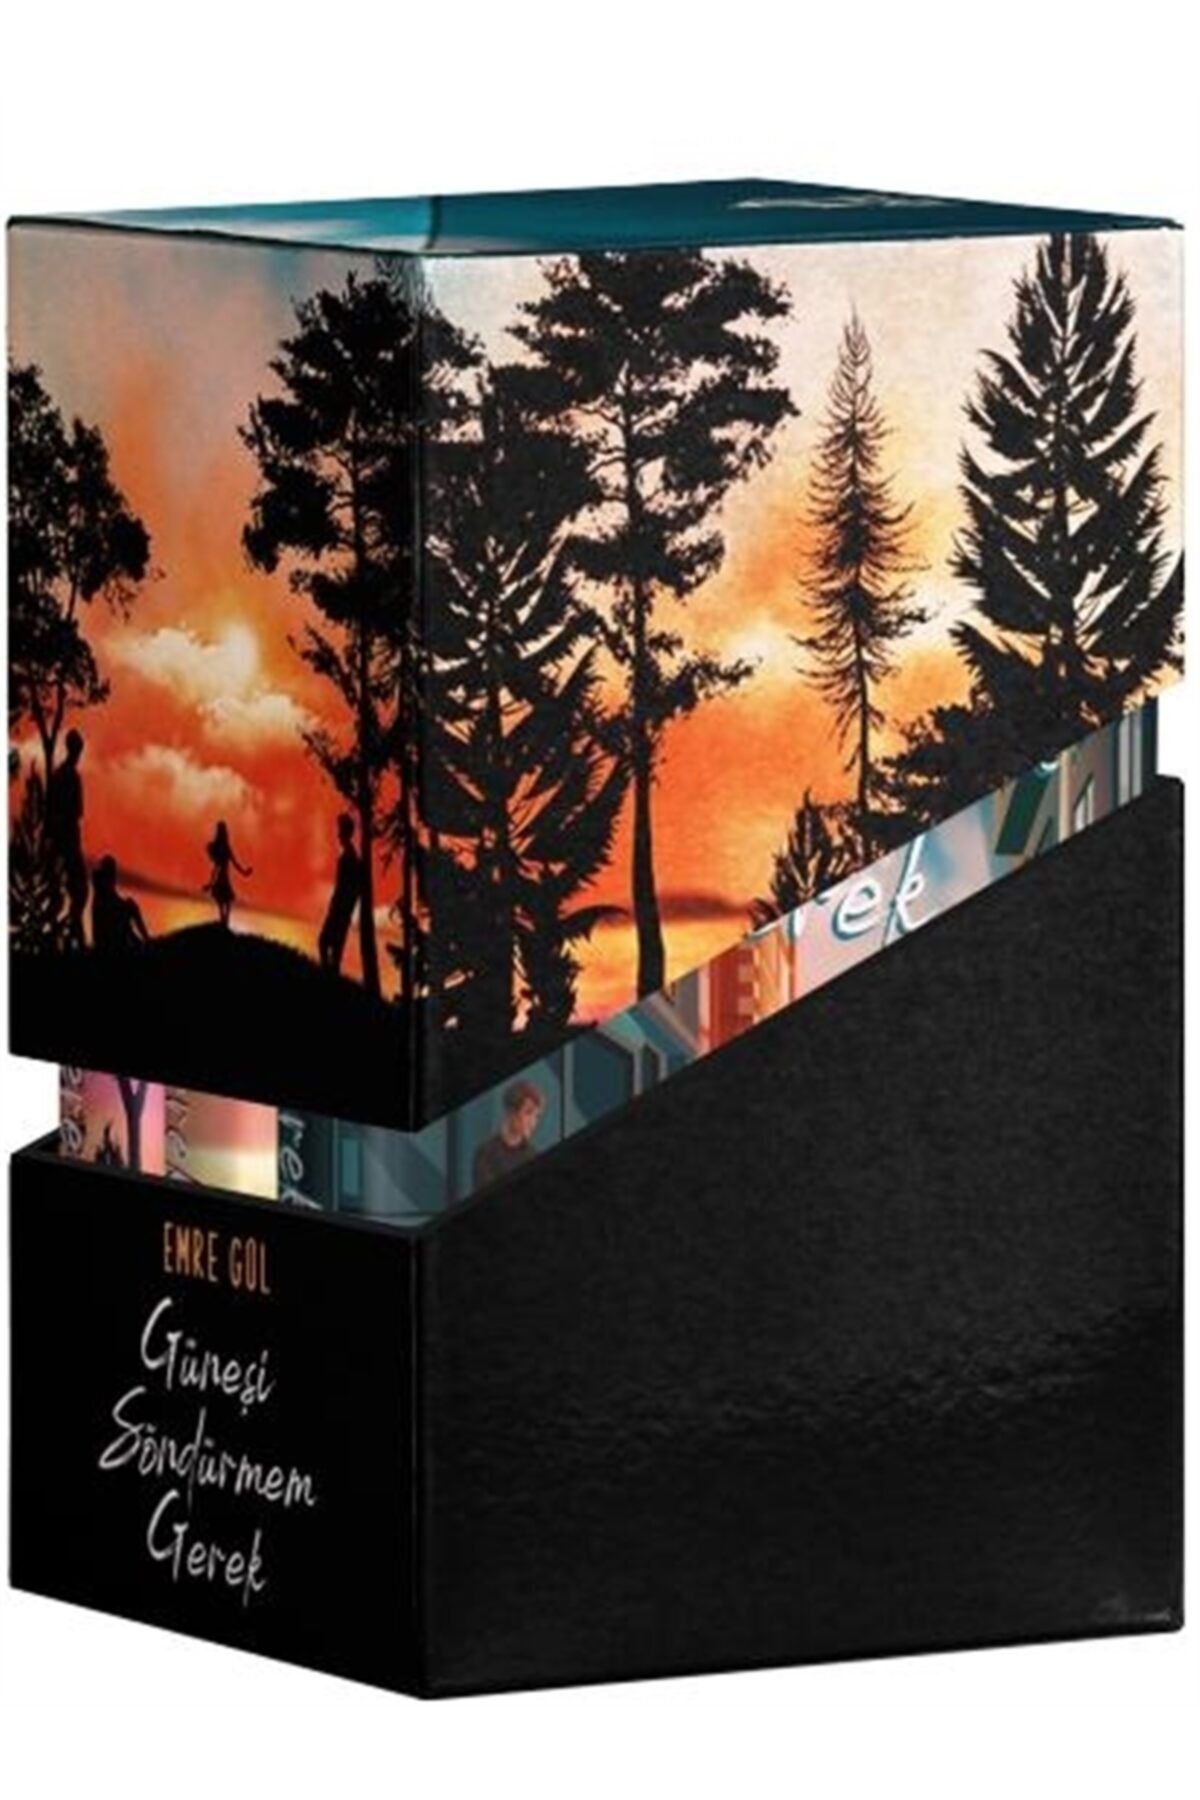 Gizzy Art - Özel Ürün Güneşi Söndürmem Gerek Kutulu Set 3 Kitap Takım Emre Gül